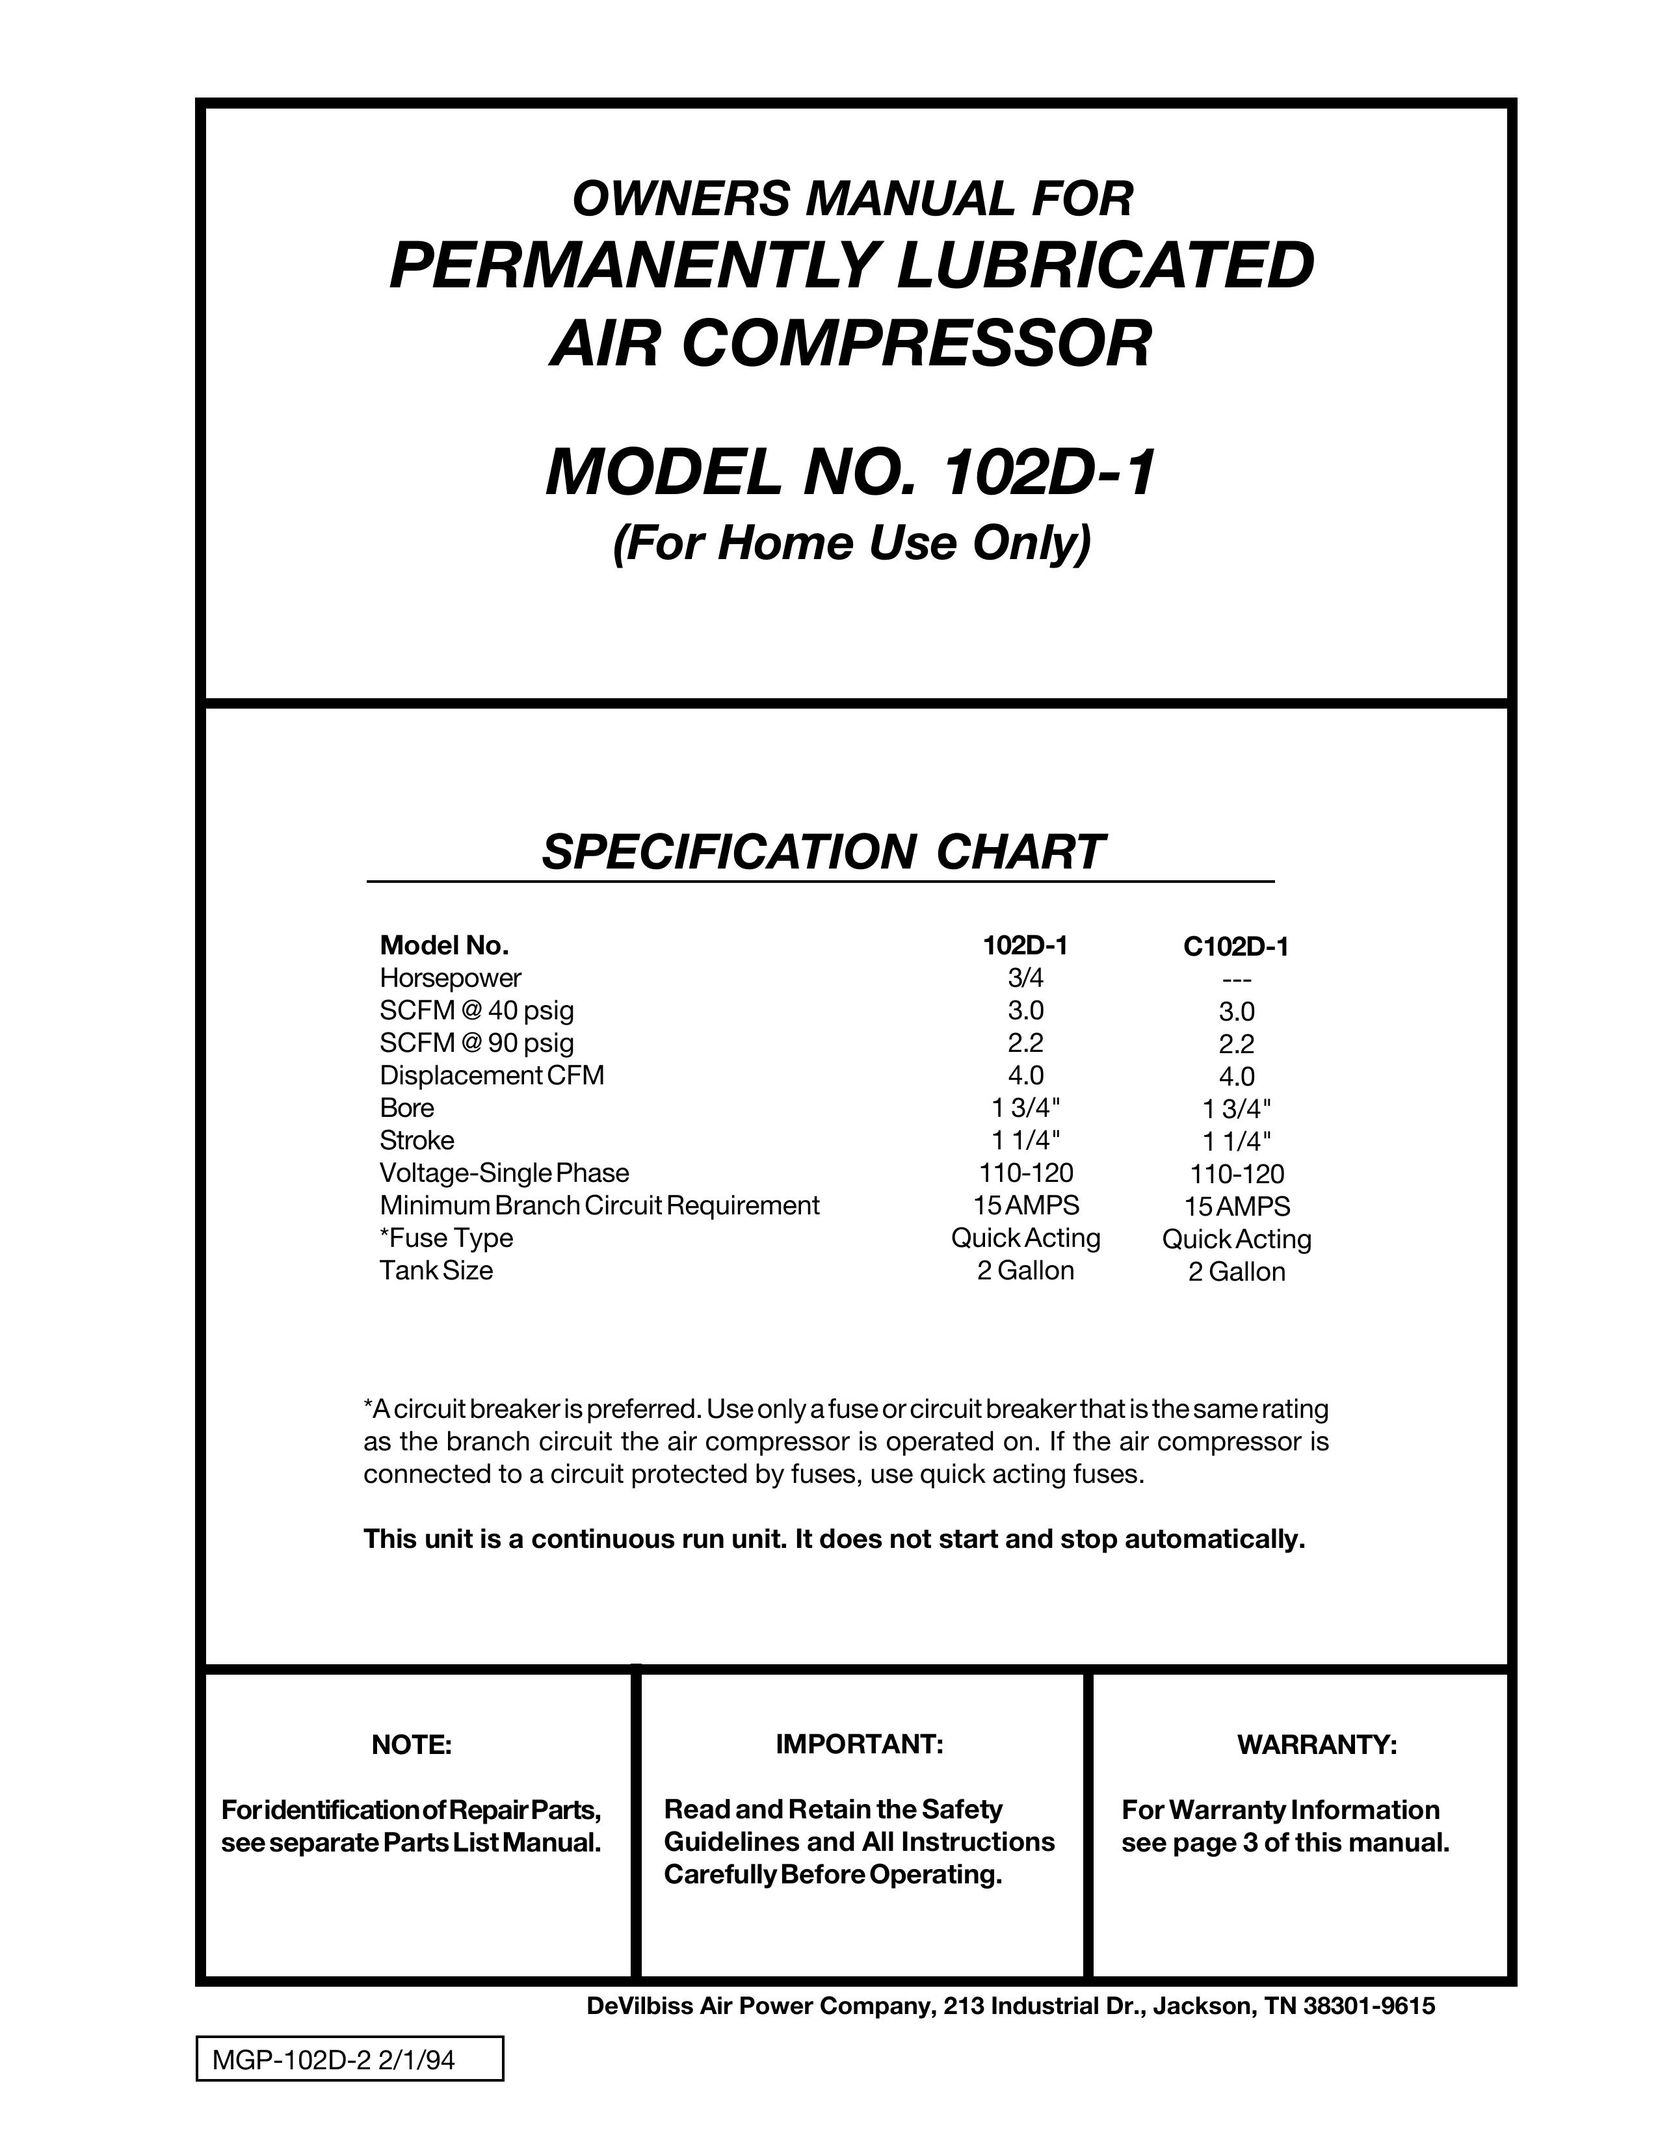 DeVillbiss Air Power Company C102D-1 Air Compressor User Manual